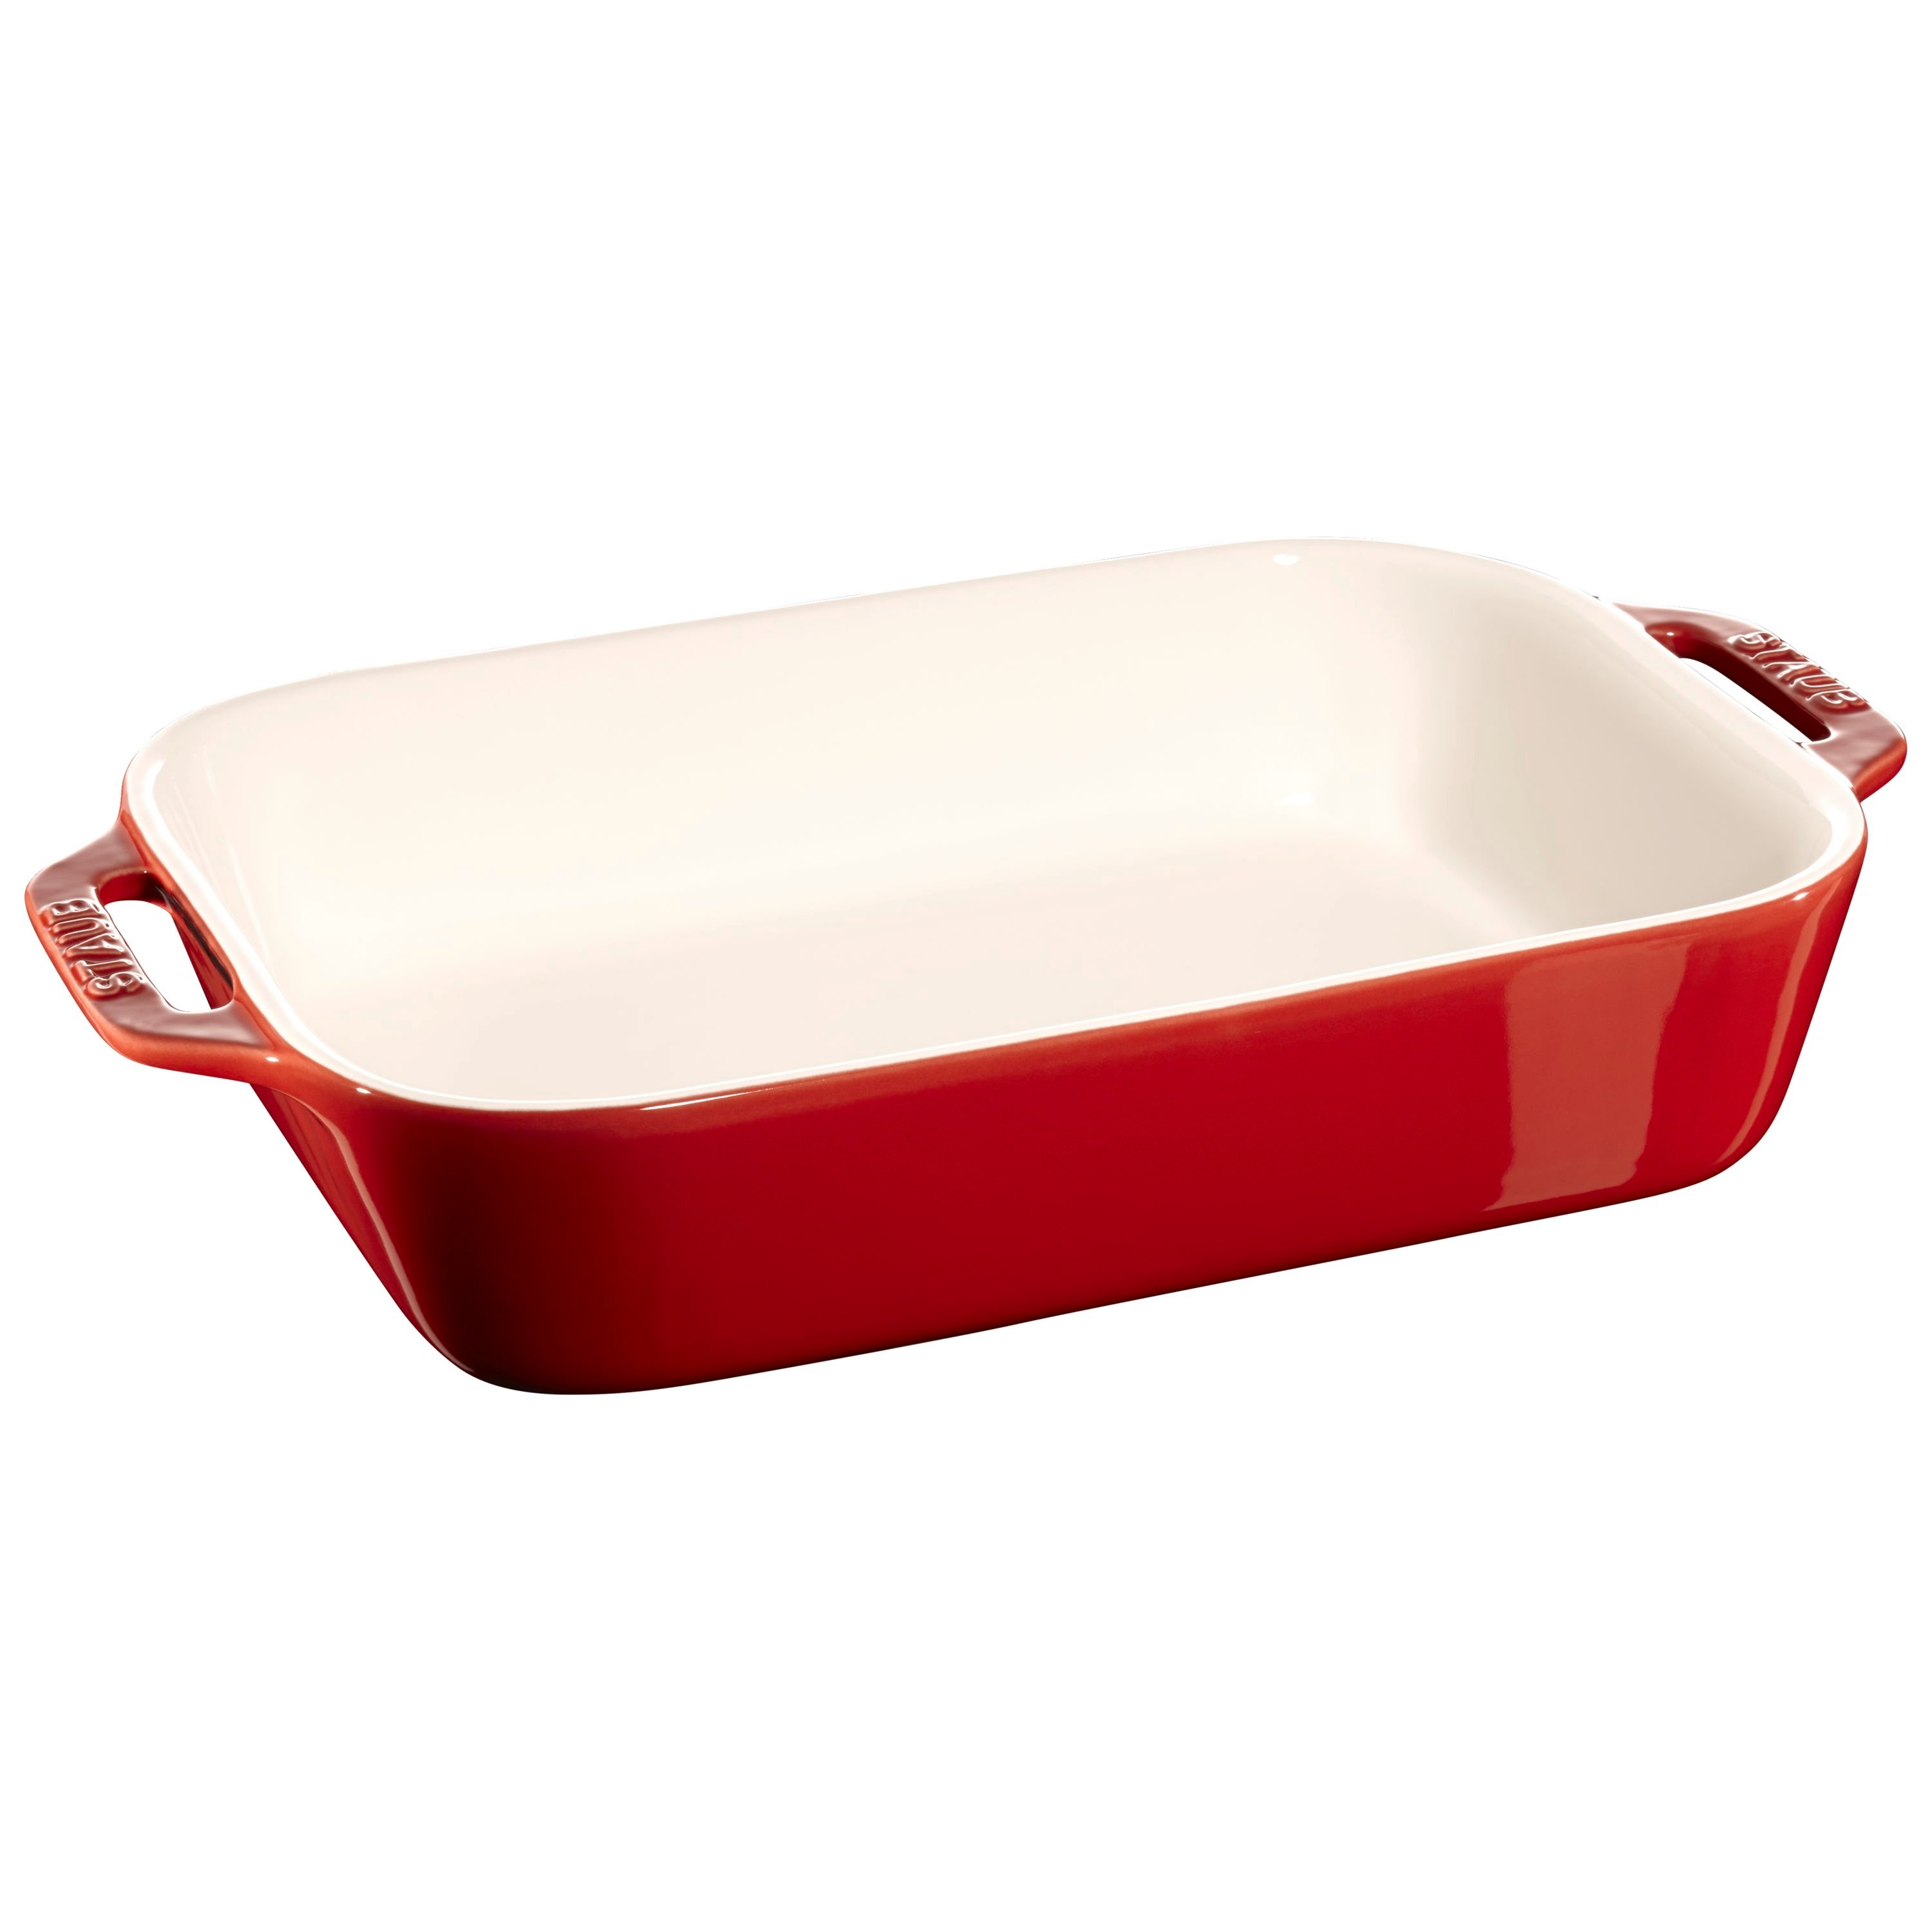 Red Enameled Cast Iron Baking Pan Rectangular Lasagna Dish